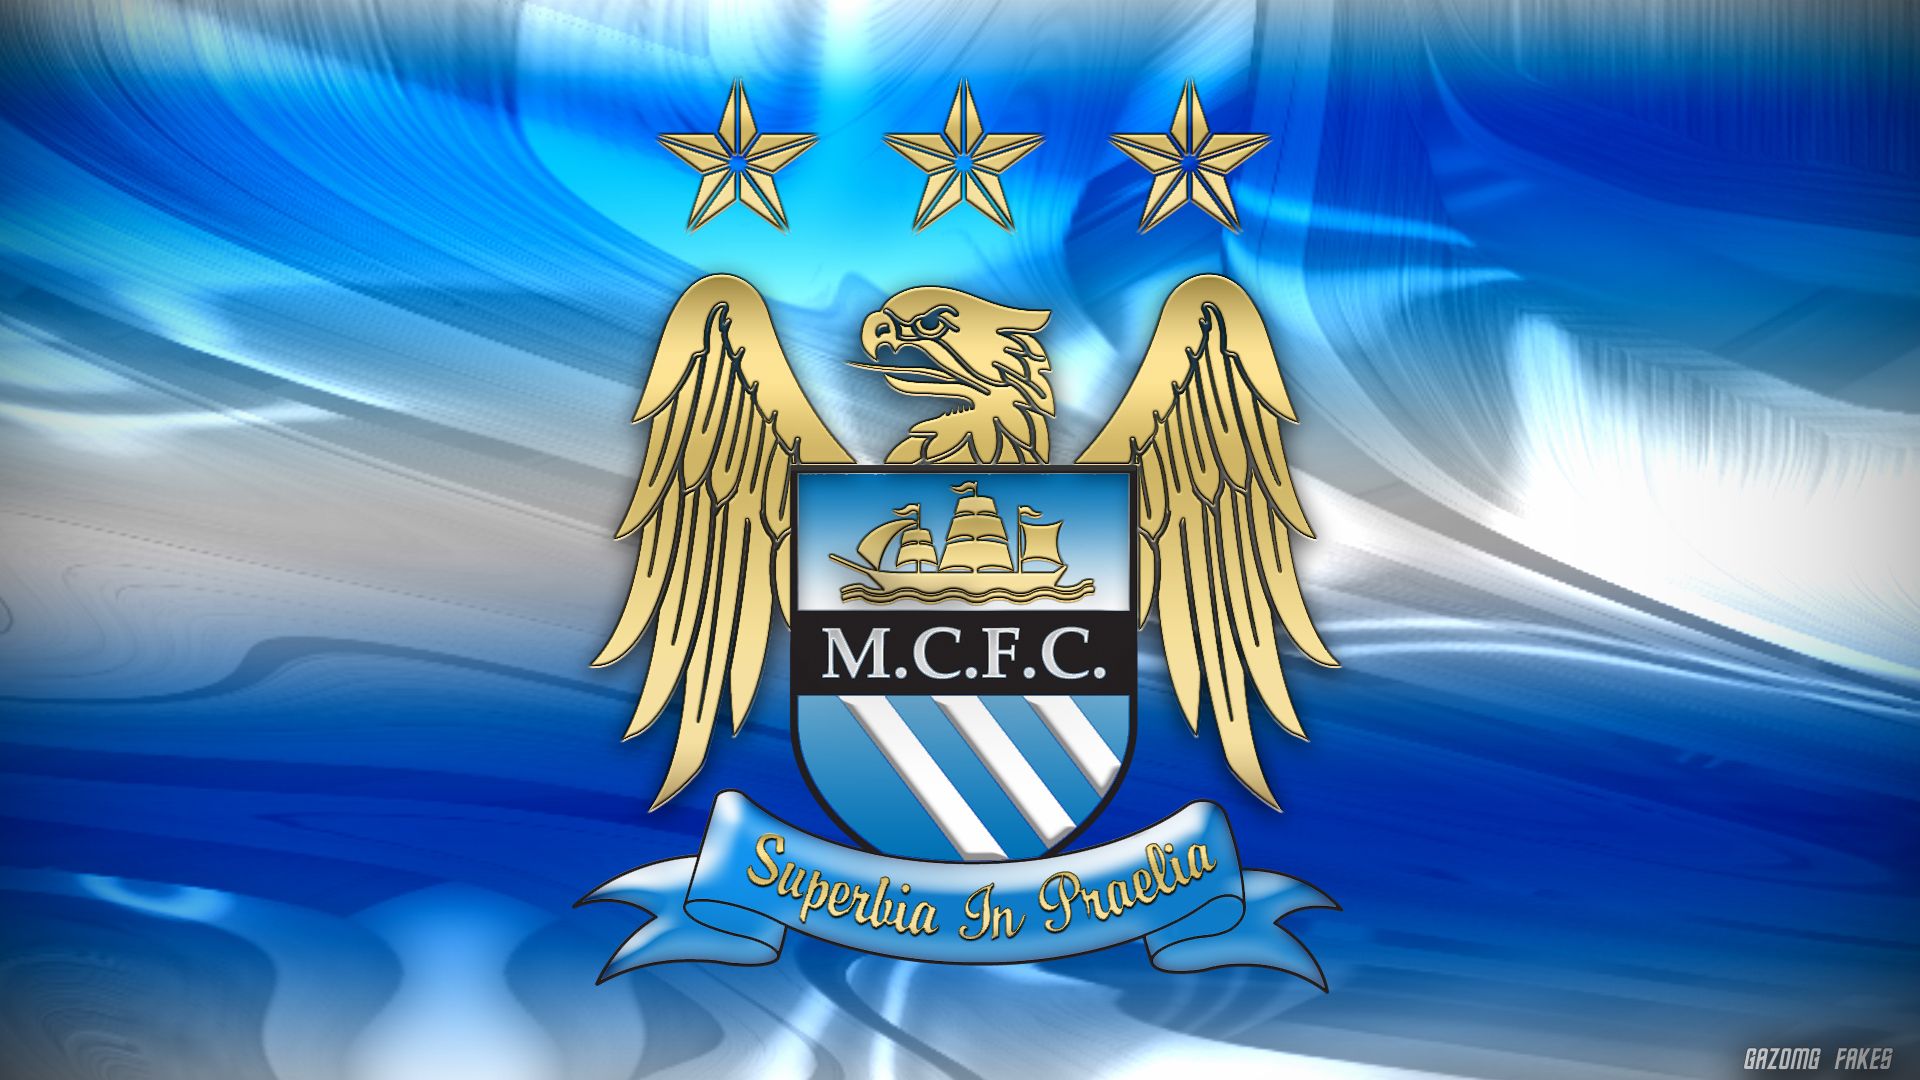 Fondo de pantalla del Manchester City 1920x1080